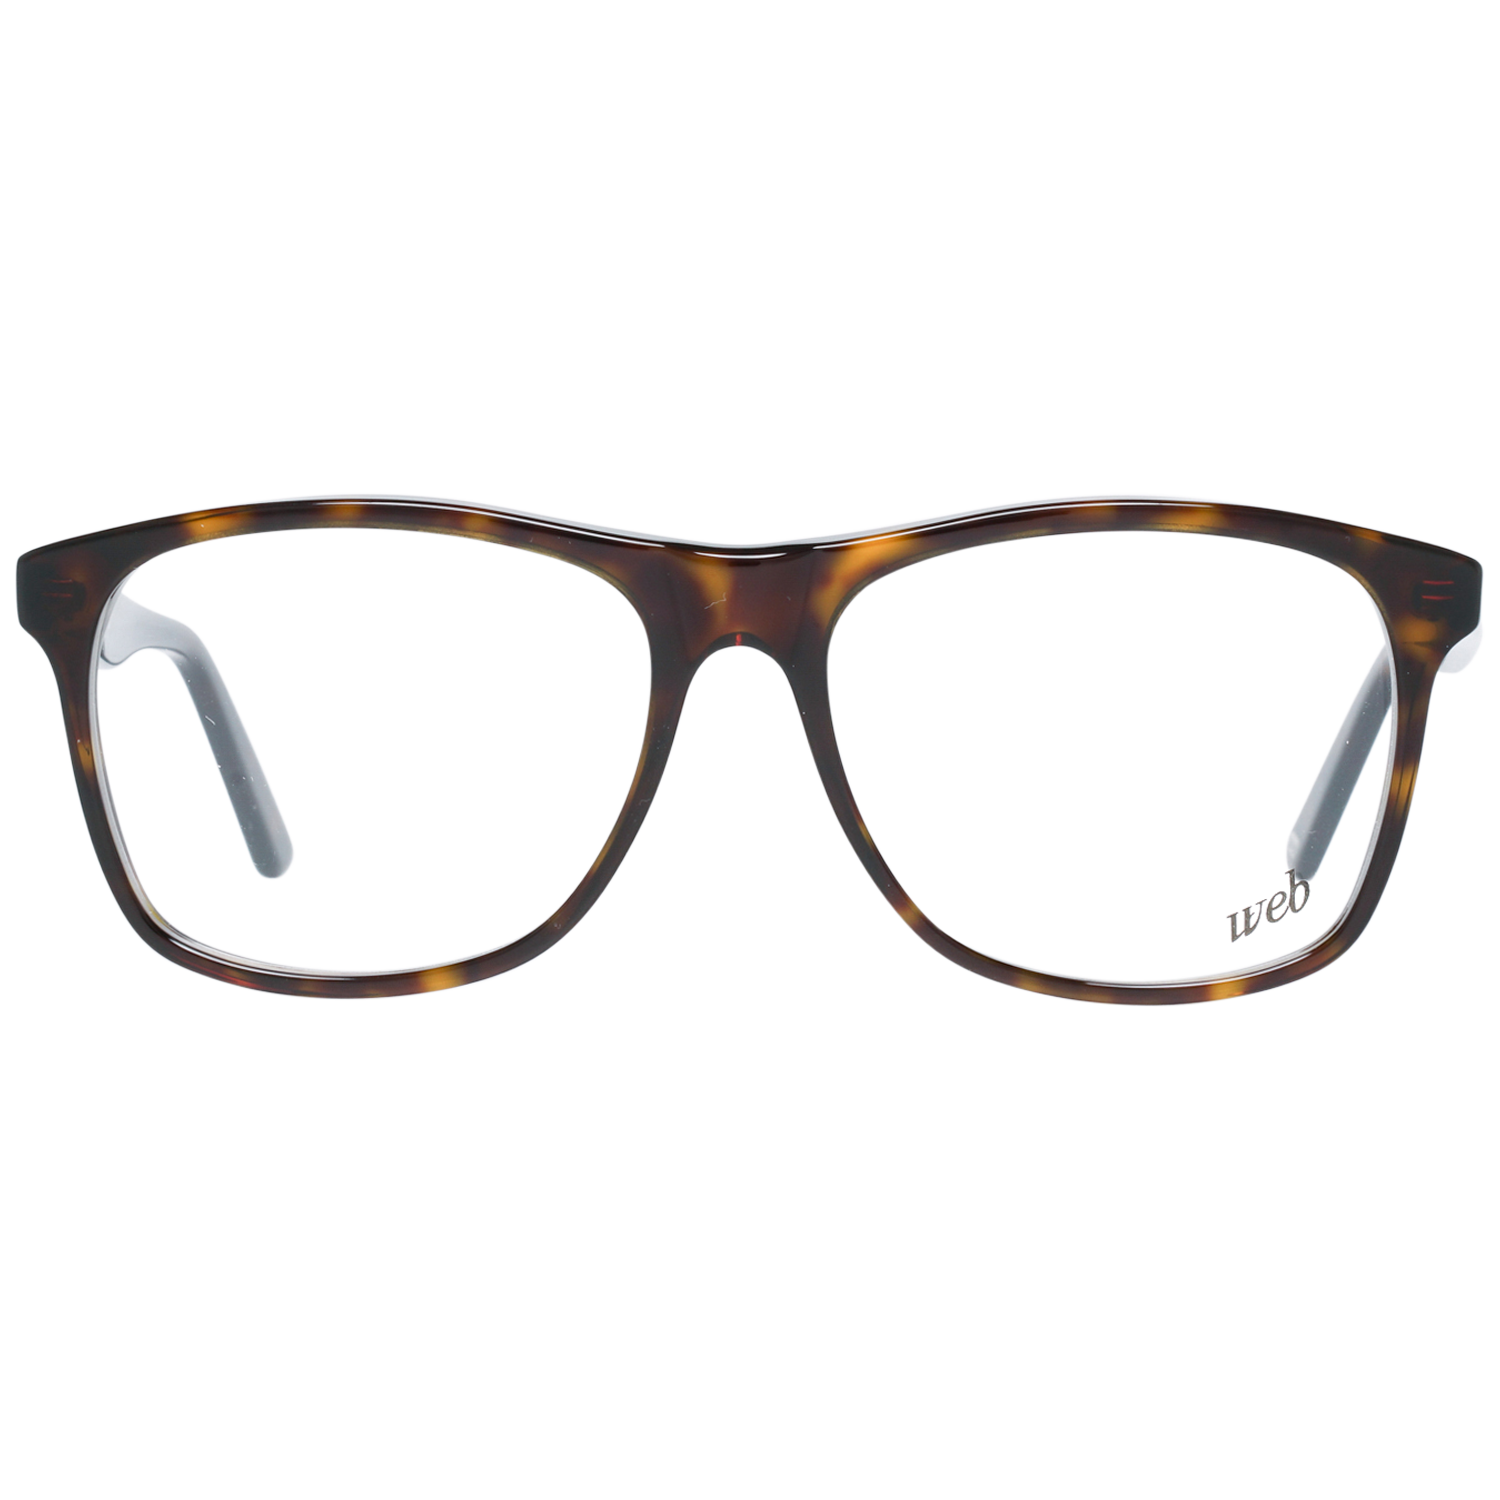 Web Frames Web Glasses Optical Frame WE5152 052 55 Eyeglasses Eyewear UK USA Australia 